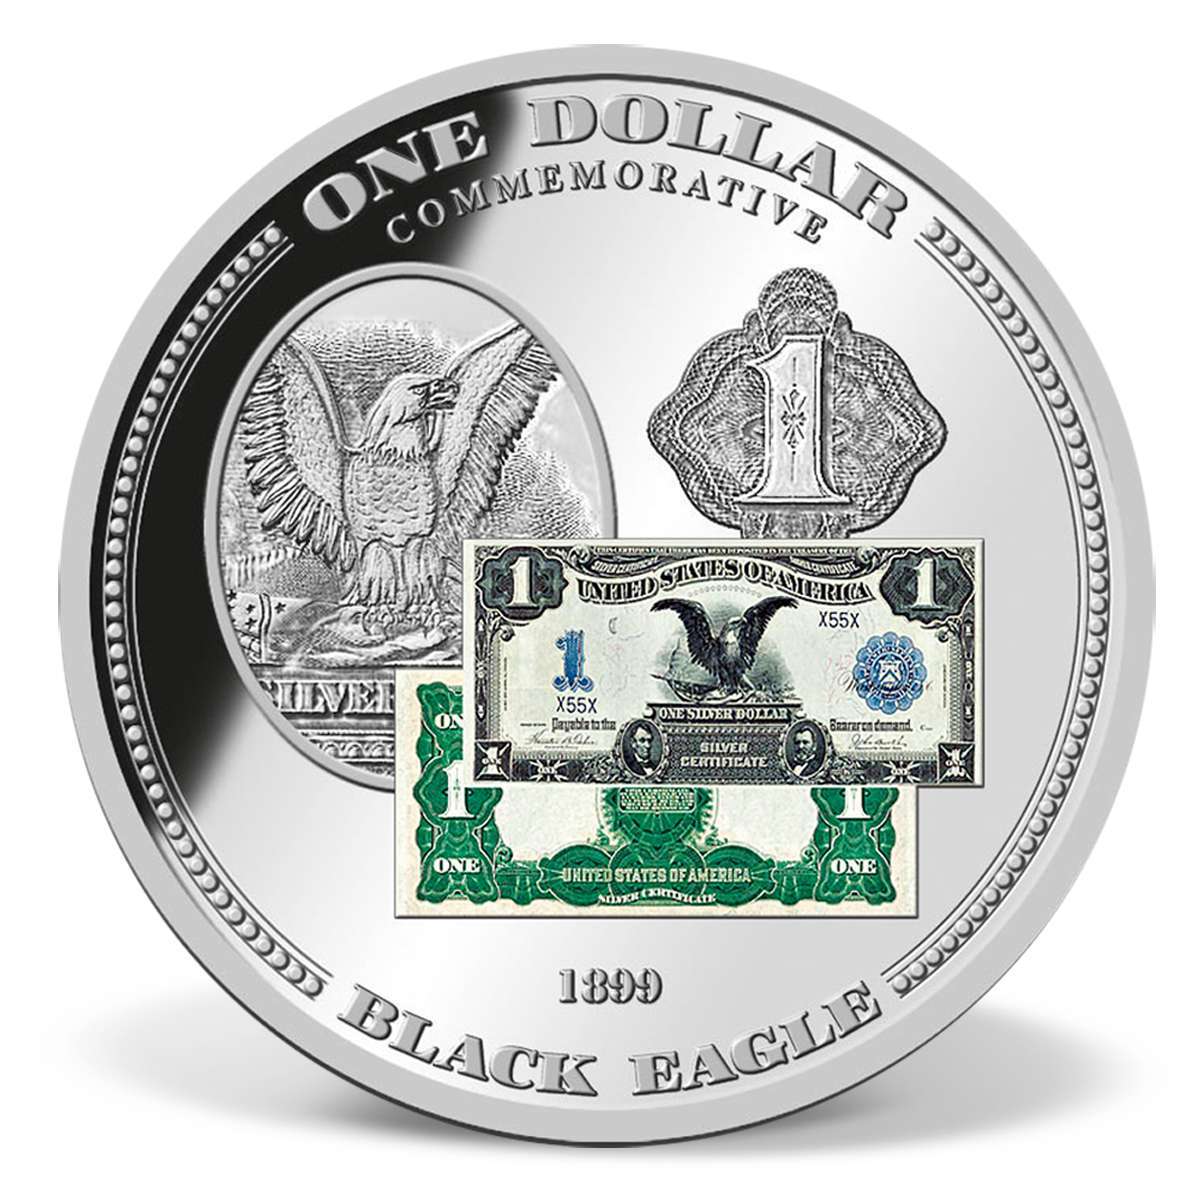 1899 Black Eagle $1 Silver Certificate Commemorative Coin Silver